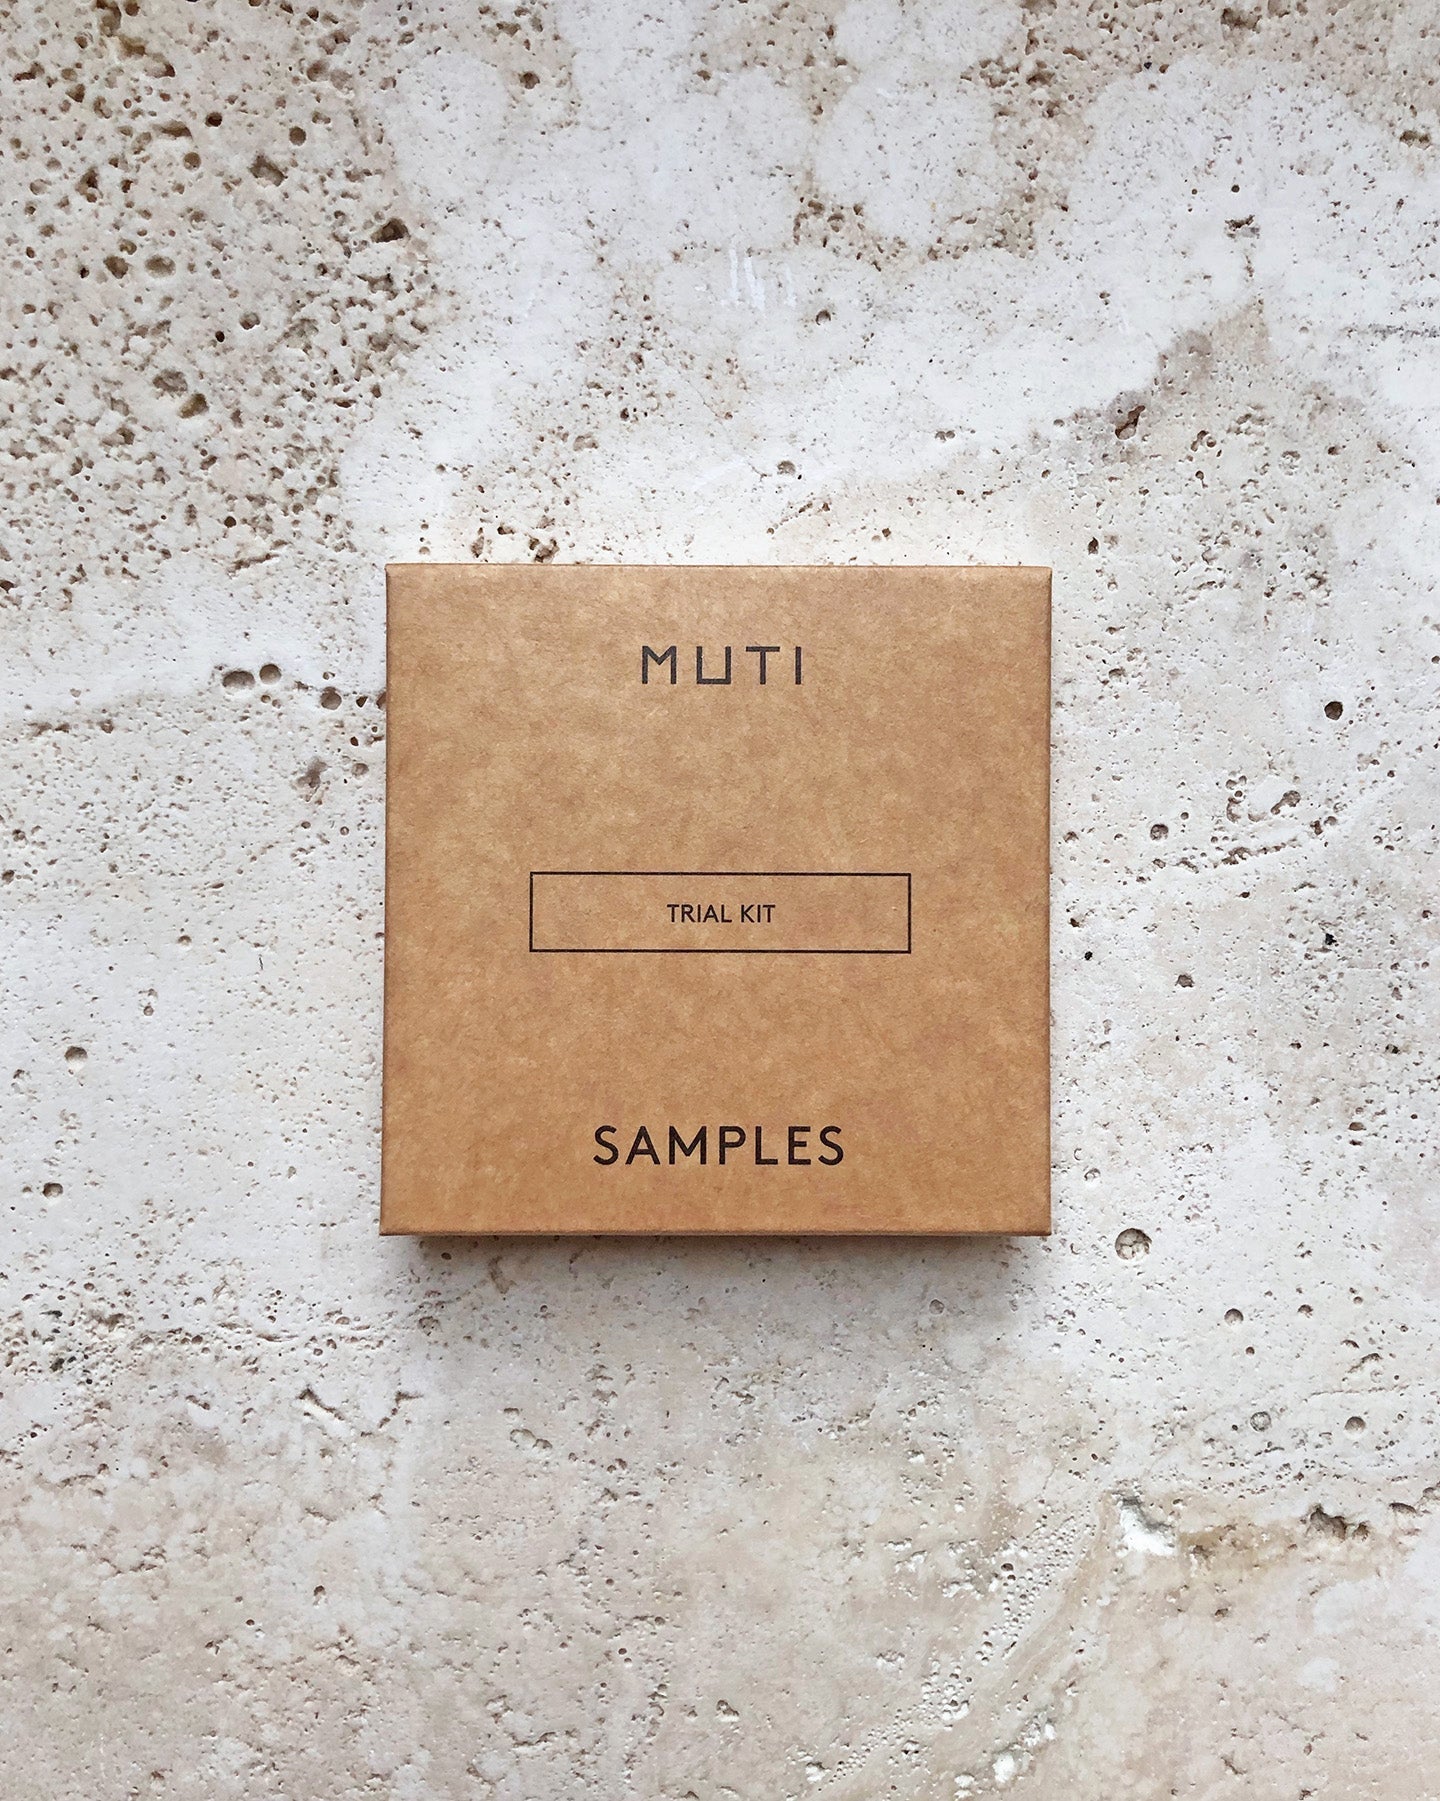 MUTI trial kit sample